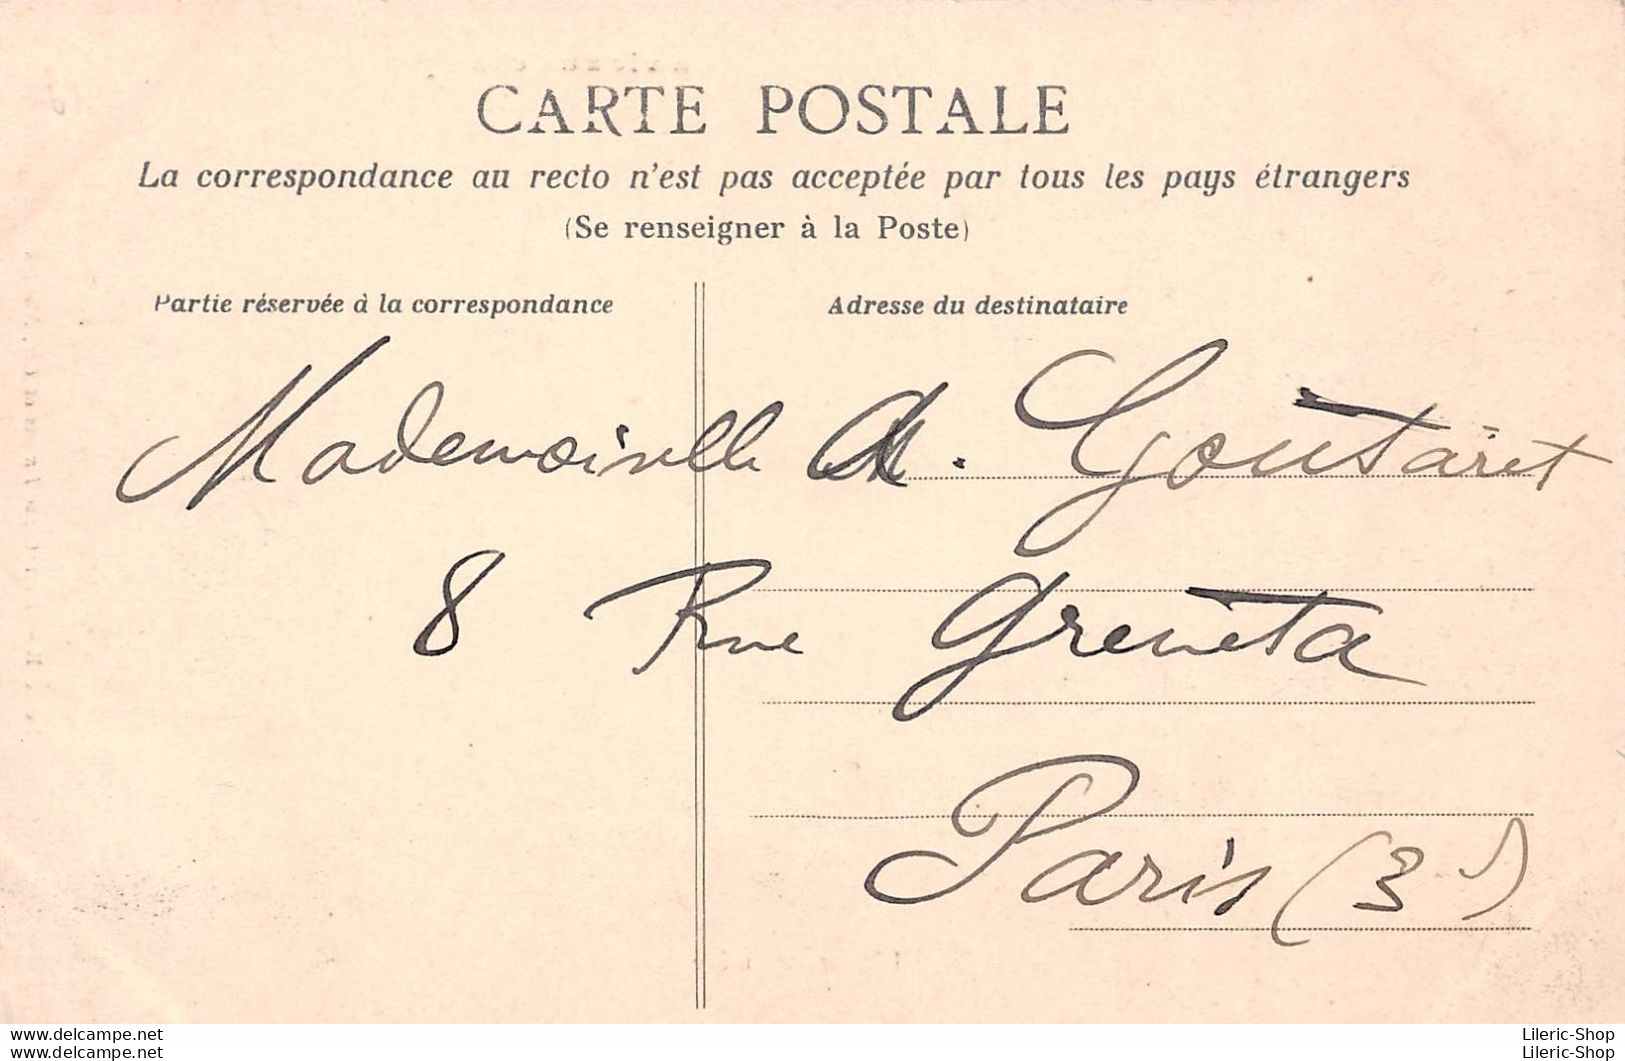 Cpa 1905 LA VIE AUX CHAMPS L'Heureuse Mère Fermière Intérieur De Ferme Rosaire ▬ Série B Dugas Et Cie - Bauernhöfe